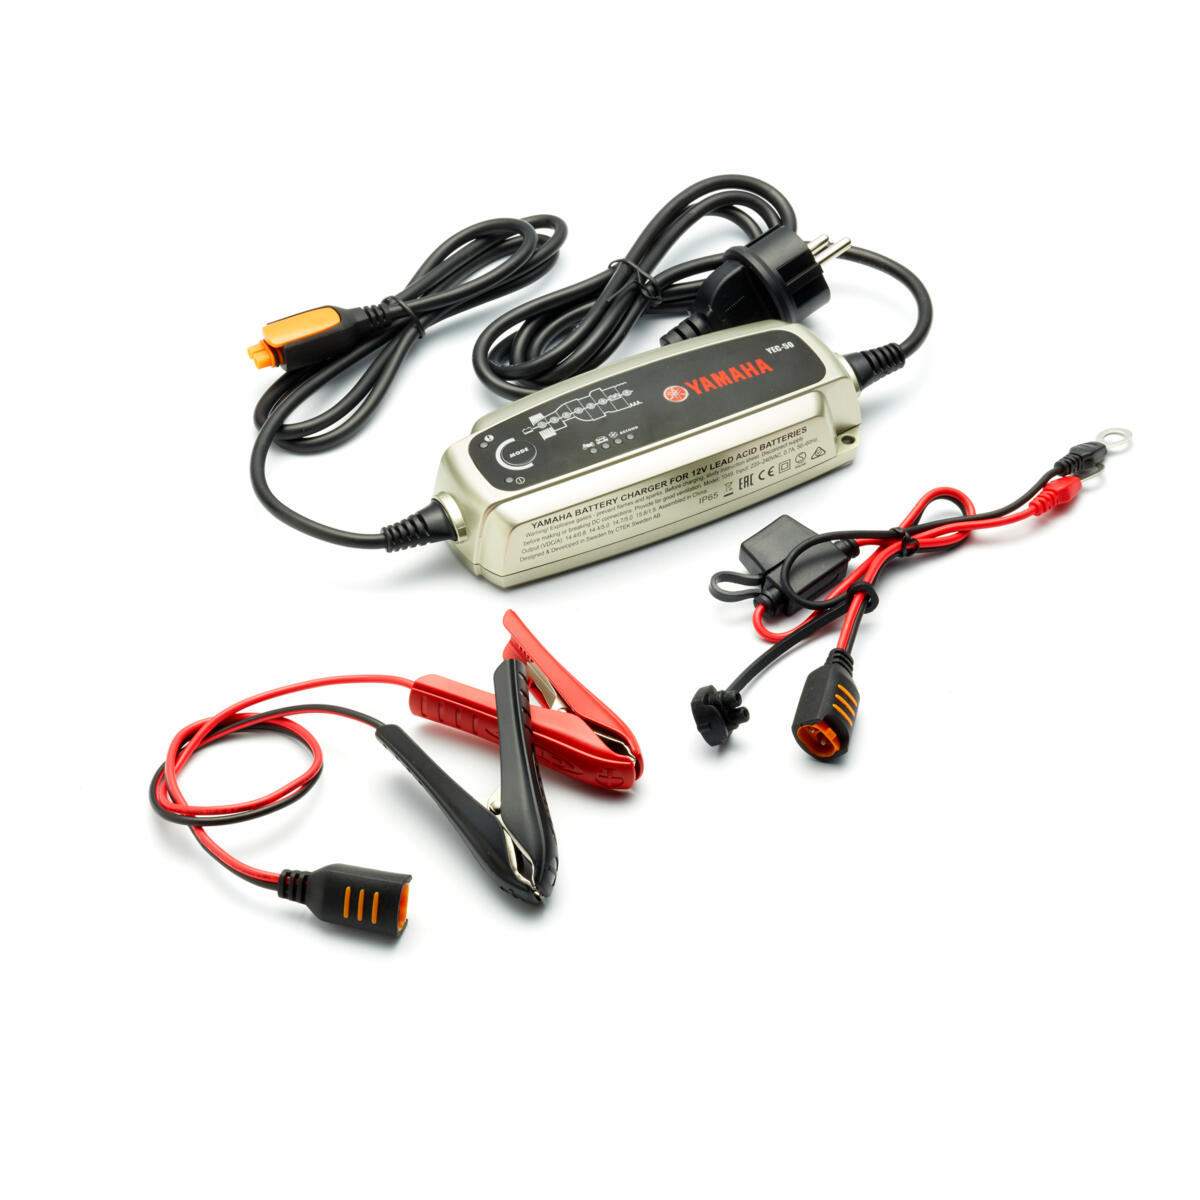 Achtstufiges Ladegerät zum Laden der Batterie Ihres Motorrads, Rollers, ATVs, SMBs und/oder Marineprodukts von Yamaha.